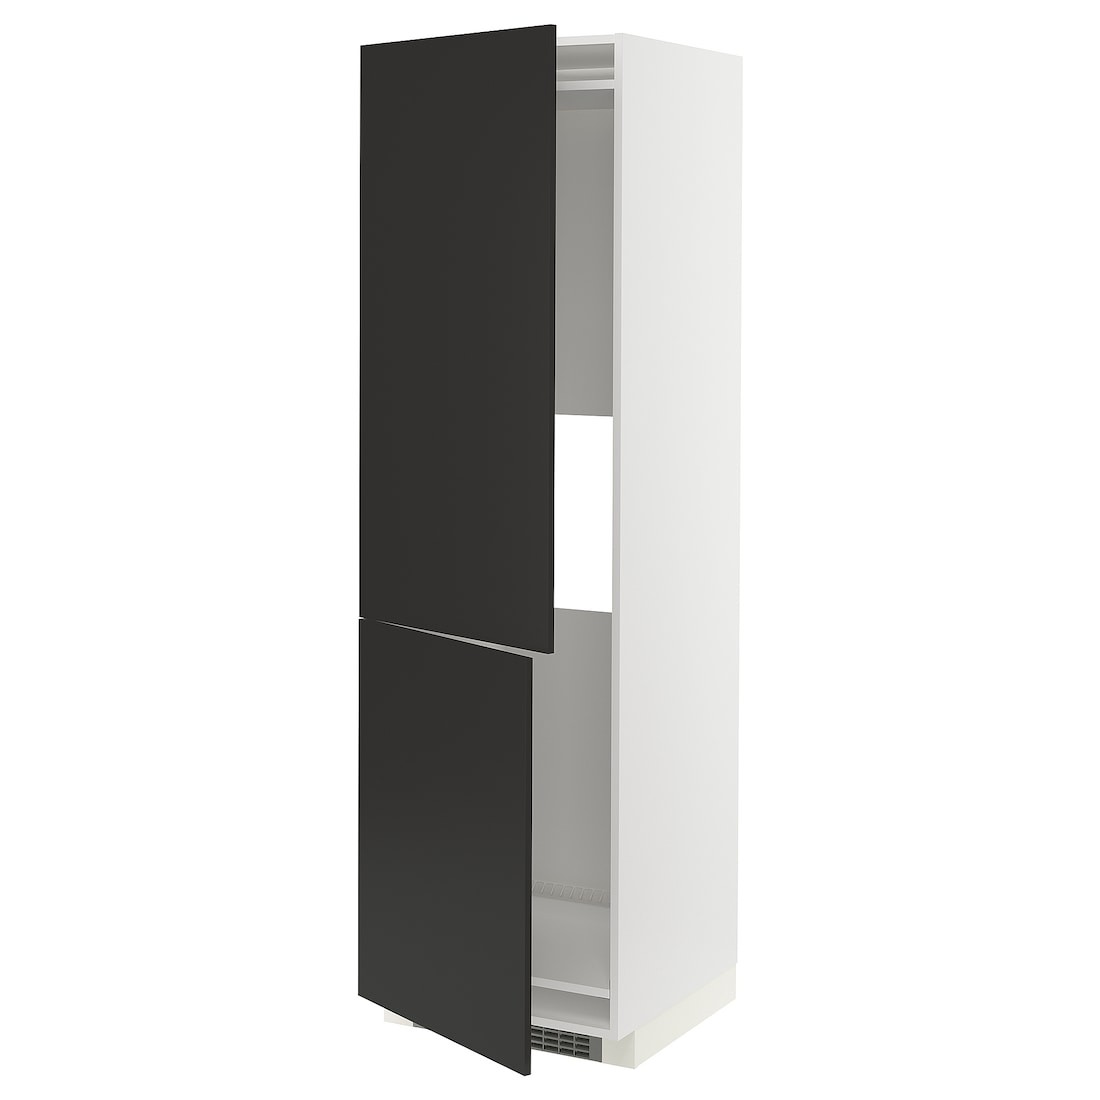 METOD МЕТОД Висока шафа для холодильника / морозильника, білий / Nickebo матовий антрацит, 60x60x200 см